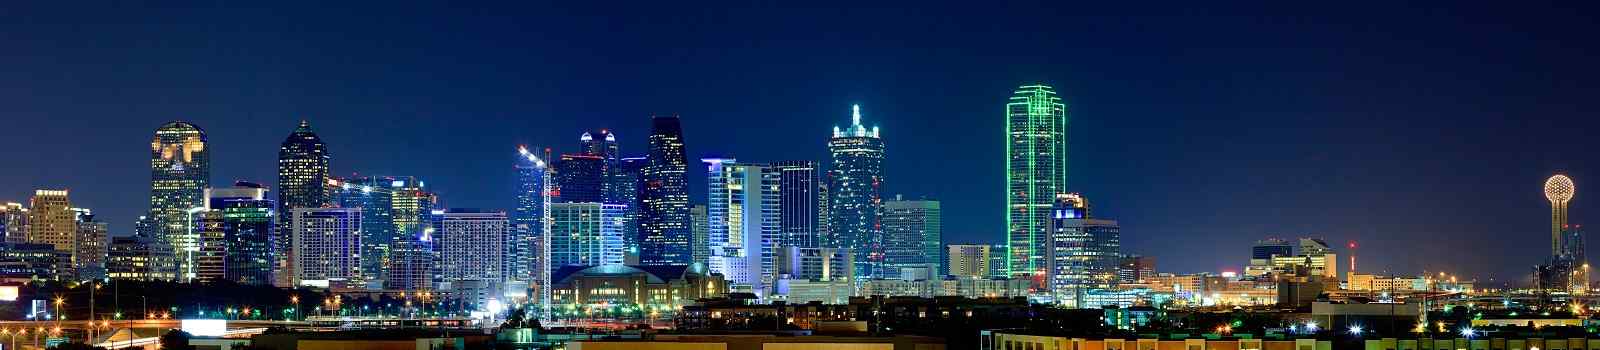 TEXAS-LONE-STAR -Der mittlere Westen - Texas Lone Star Roundup Dallas Skyline